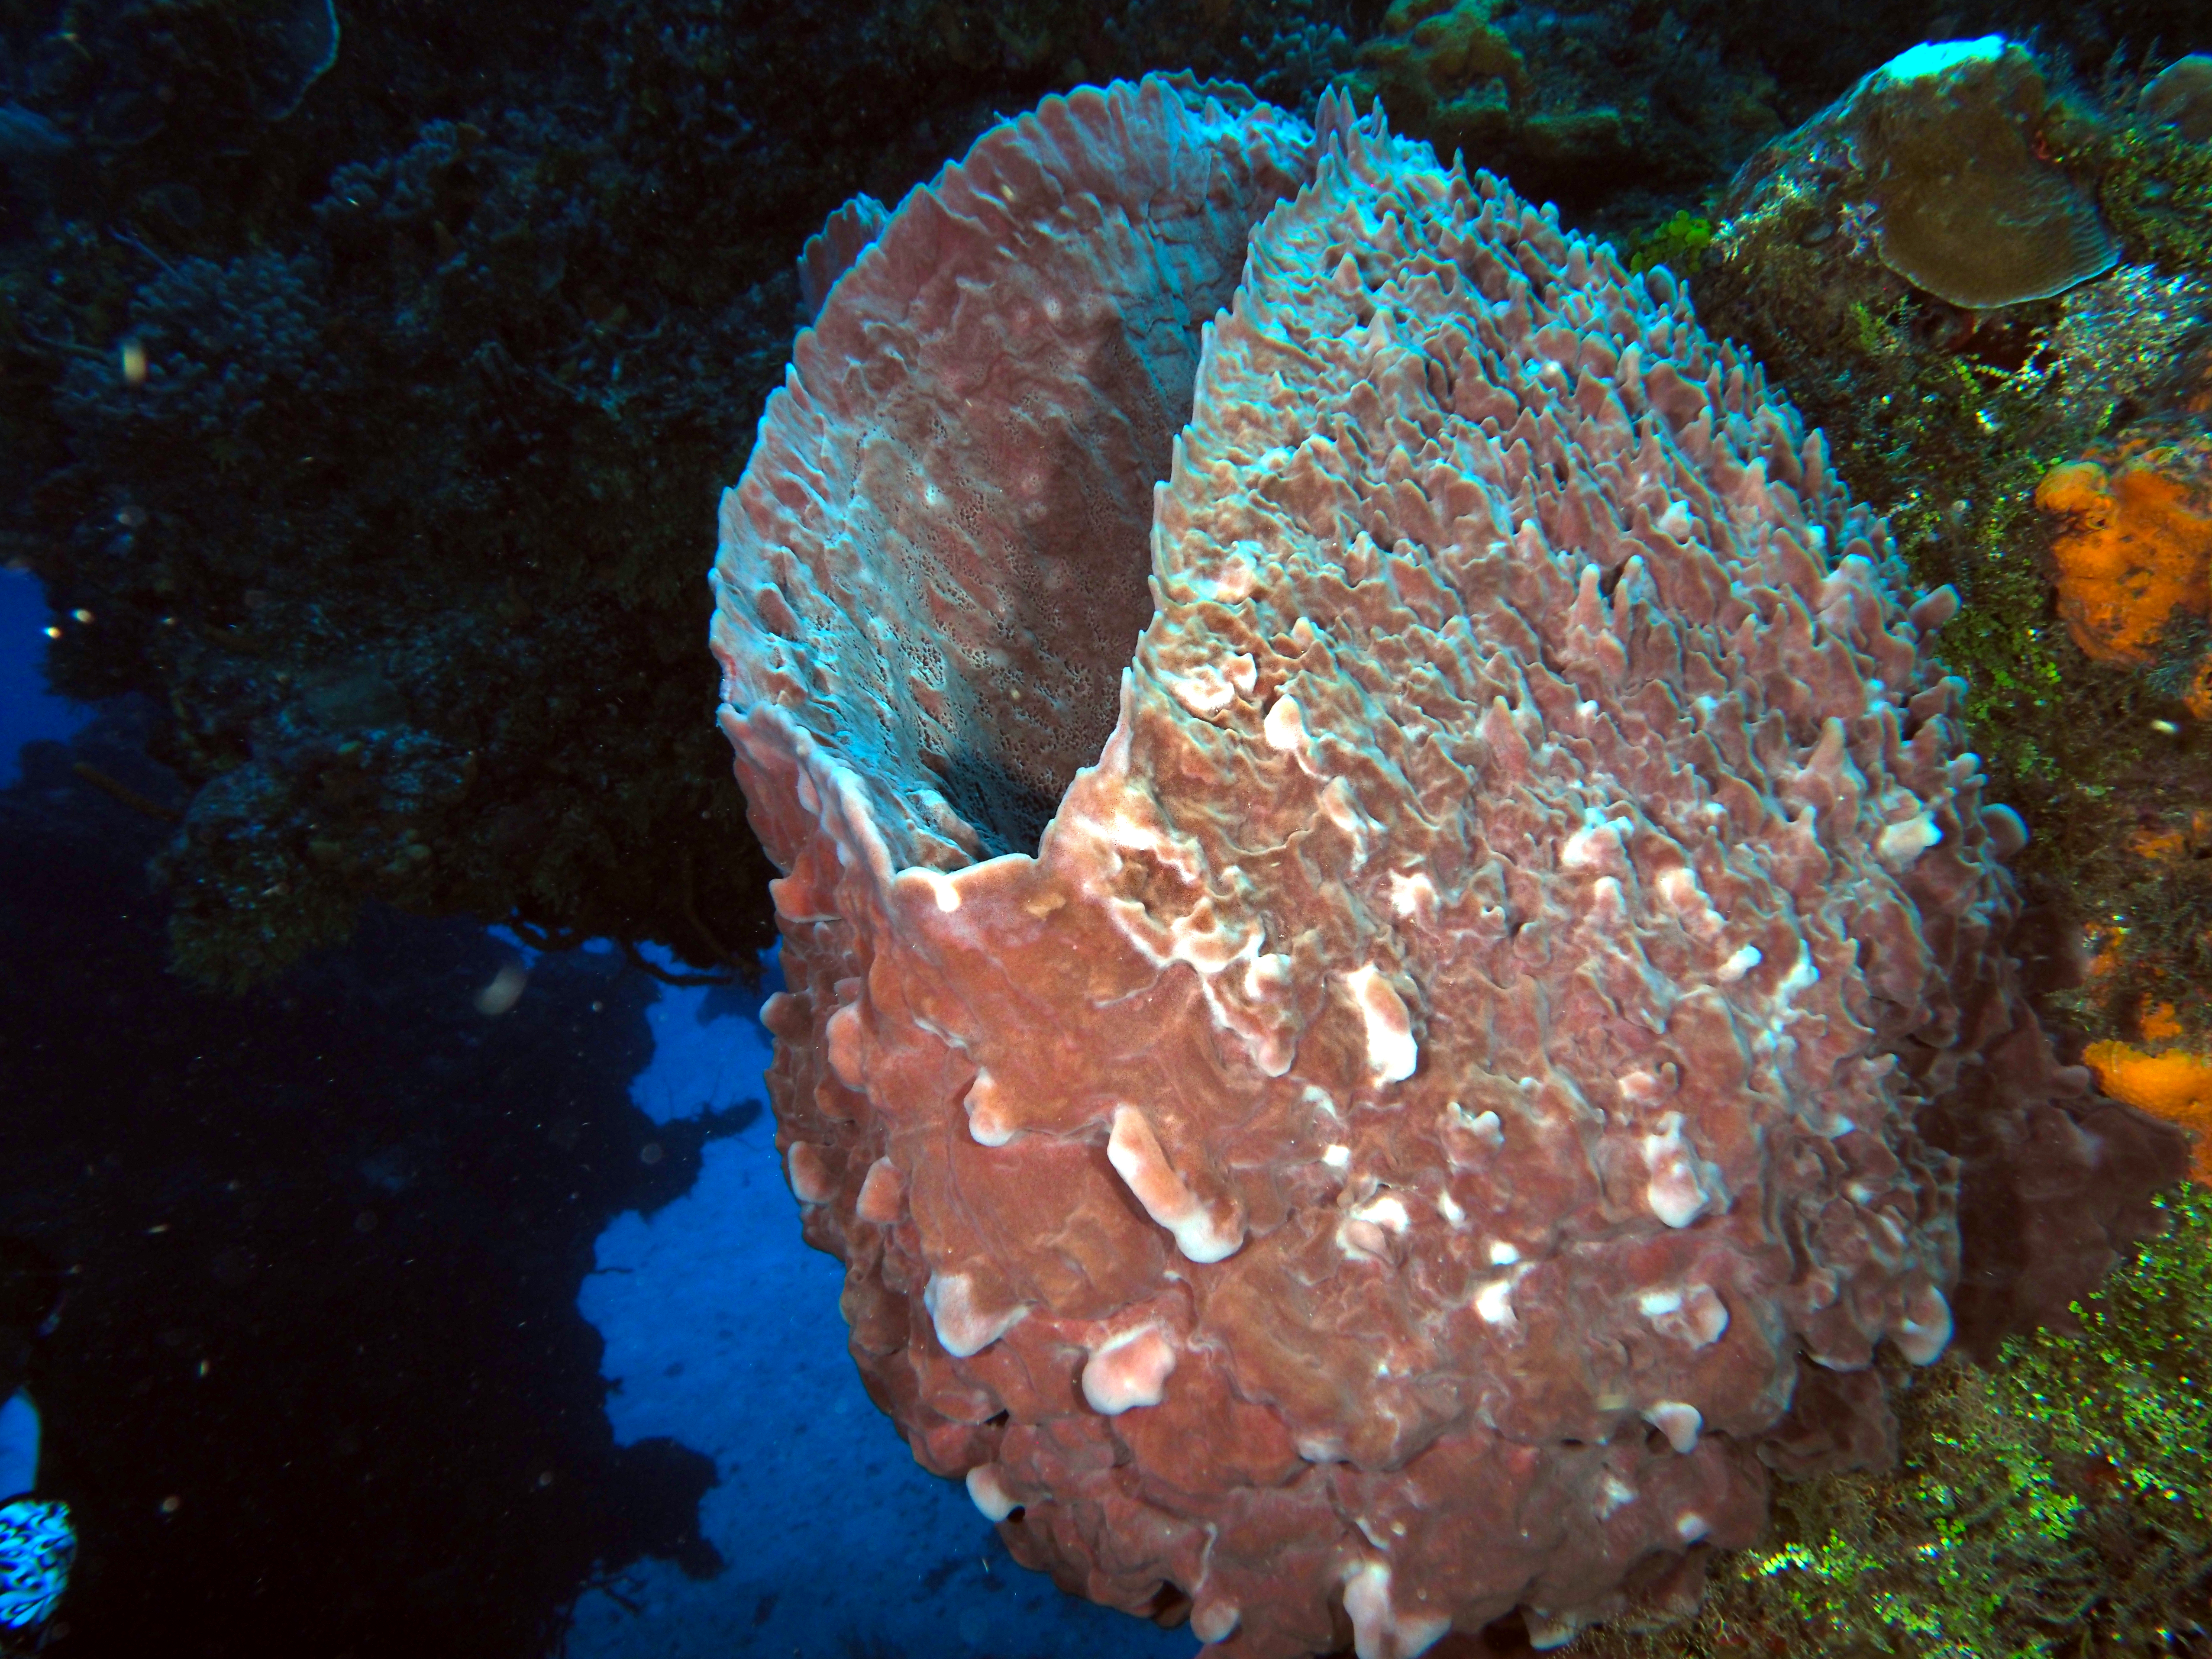 Giant Barrel Sponge - Xestospongia muta